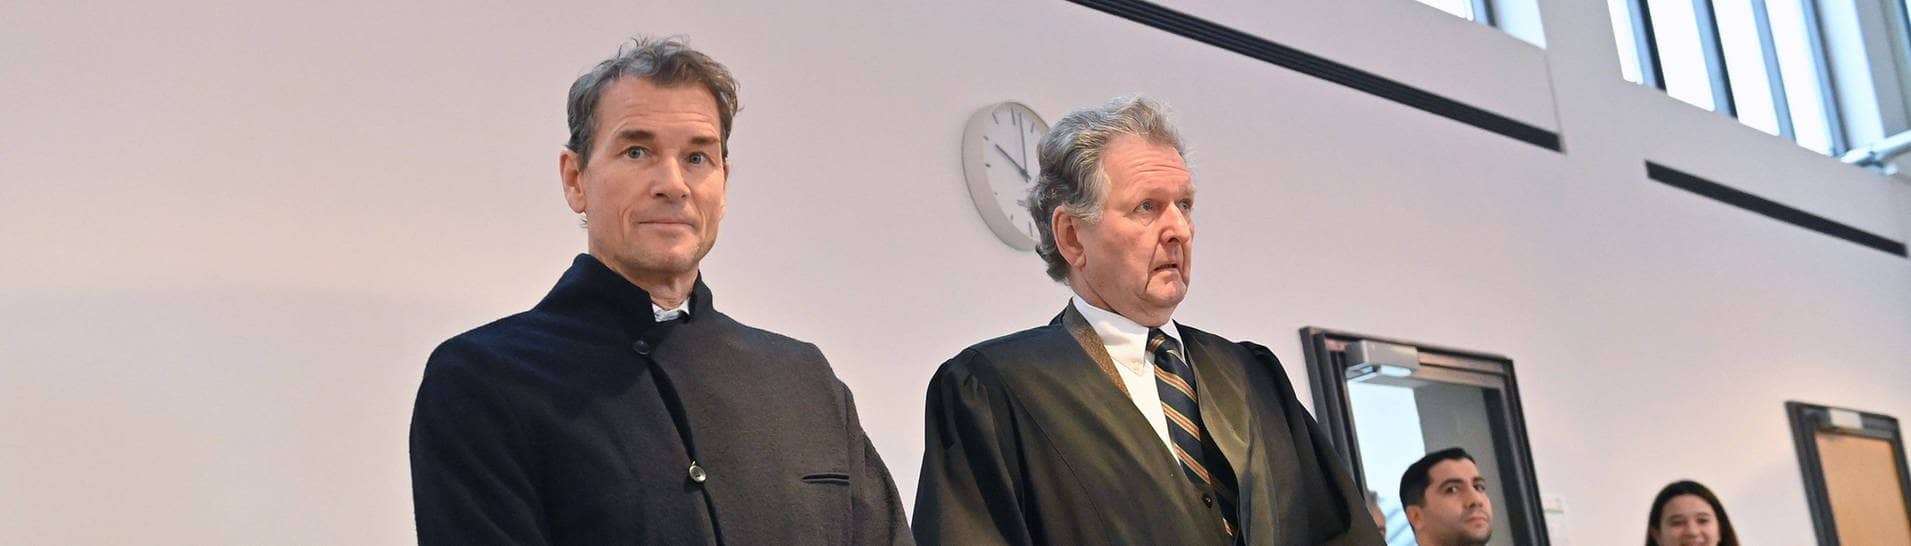 Jens Lehmann wurde zu einer Geldstrafe von 420.000 Euro verurteilt.